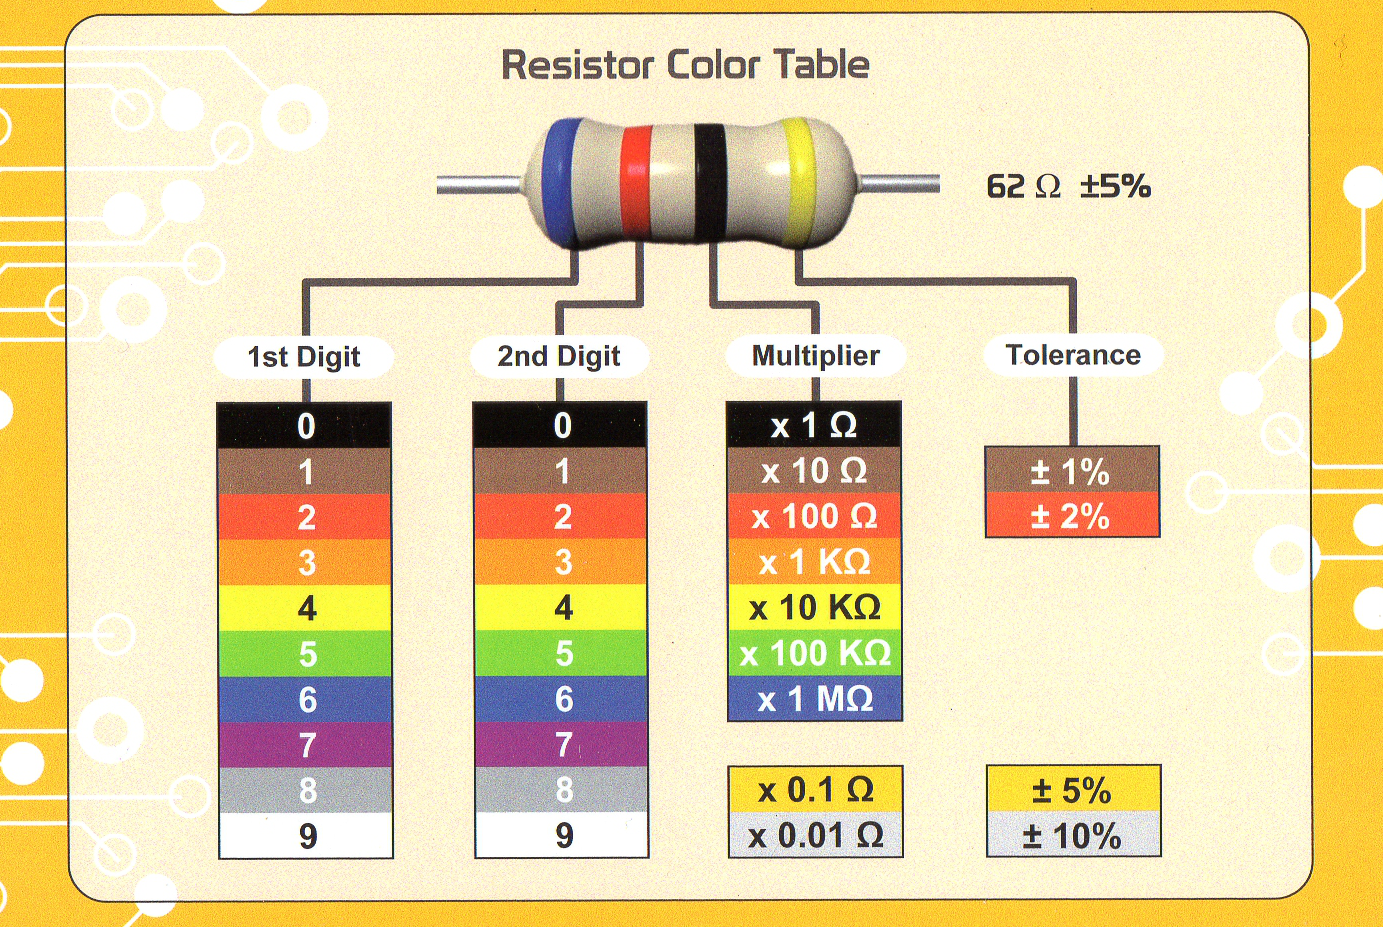 Калькулятор цвета сопротивления. Цветовая маркировка резисторов 4 полосы. Цветовая маркировка резисторов 2 полосы. Цветовая маркировка резисторов 5 полос. Резистор 0.22 Ома цветовая маркировка.